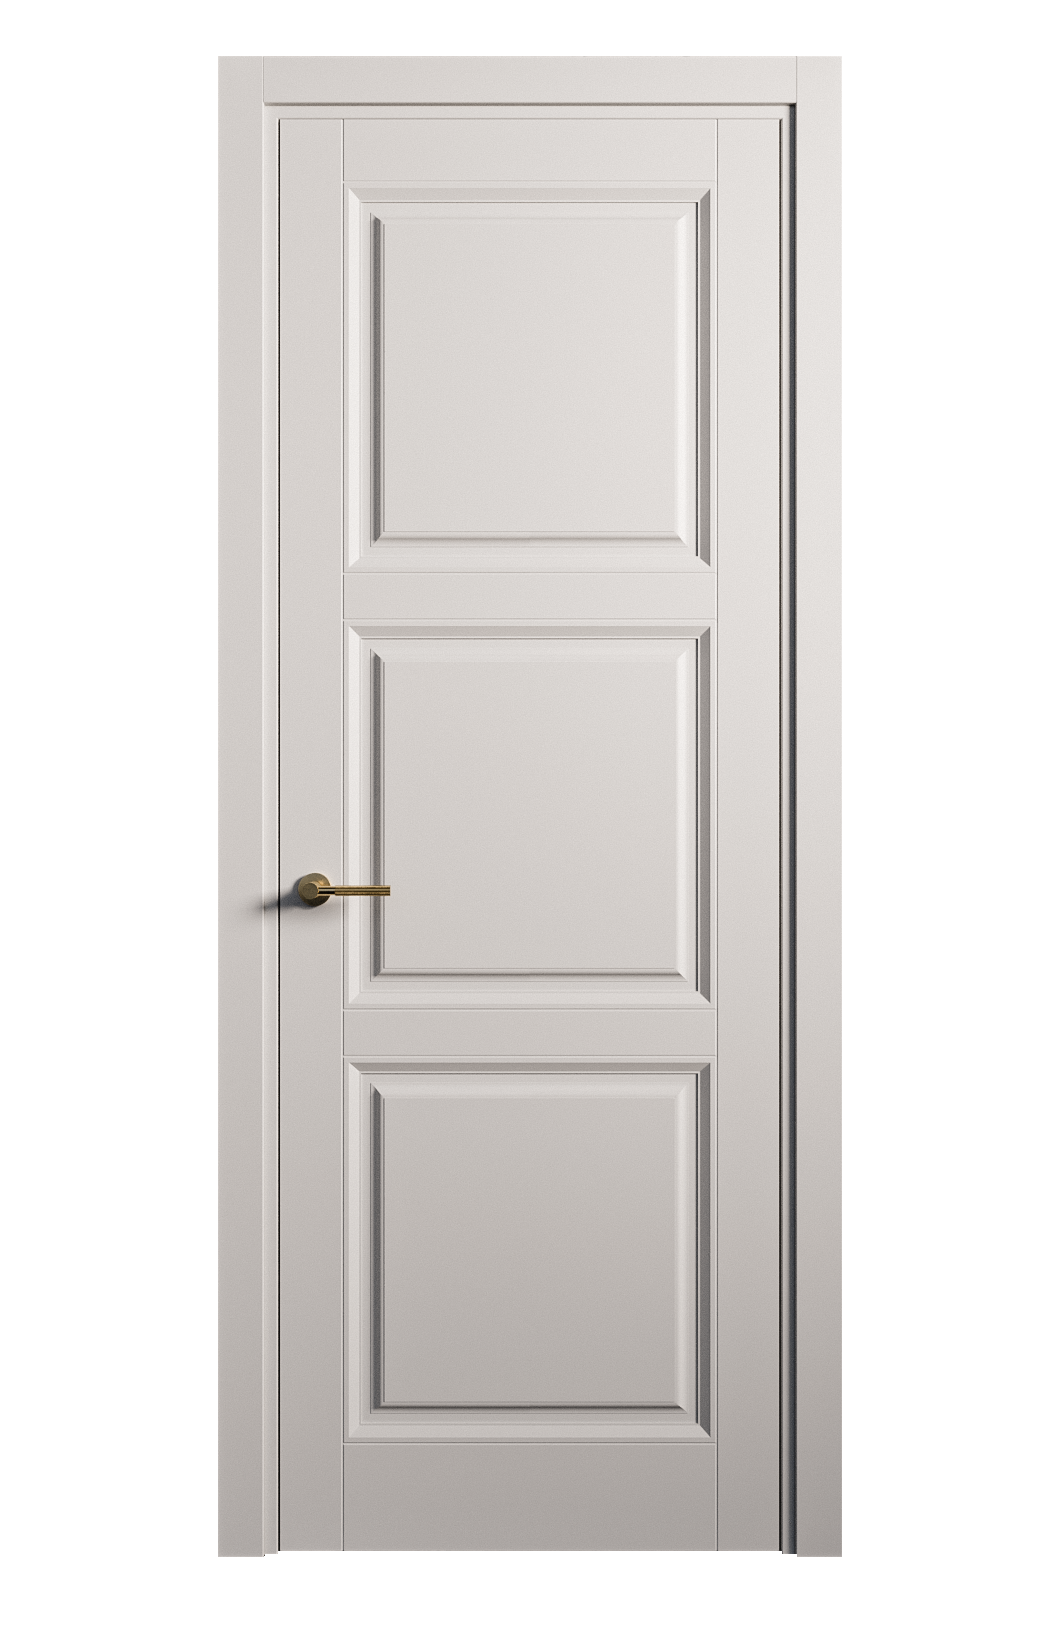 Межкомнатная дверь Venezia-3 глухая эмаль ral 7047 25728